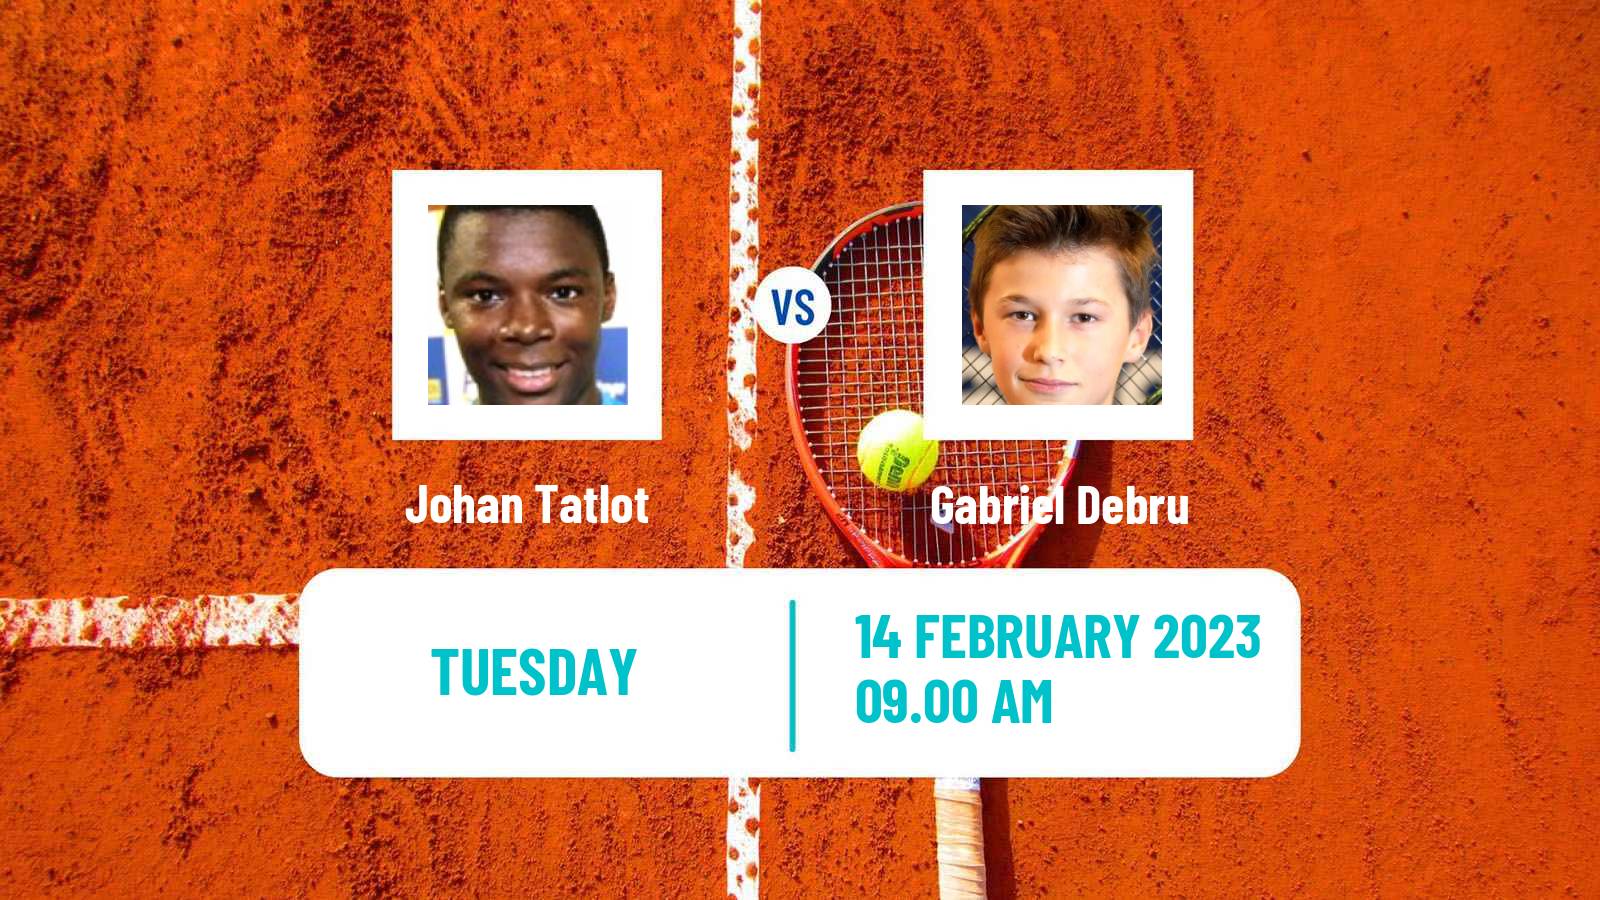 Tennis ATP Challenger Johan Tatlot - Gabriel Debru